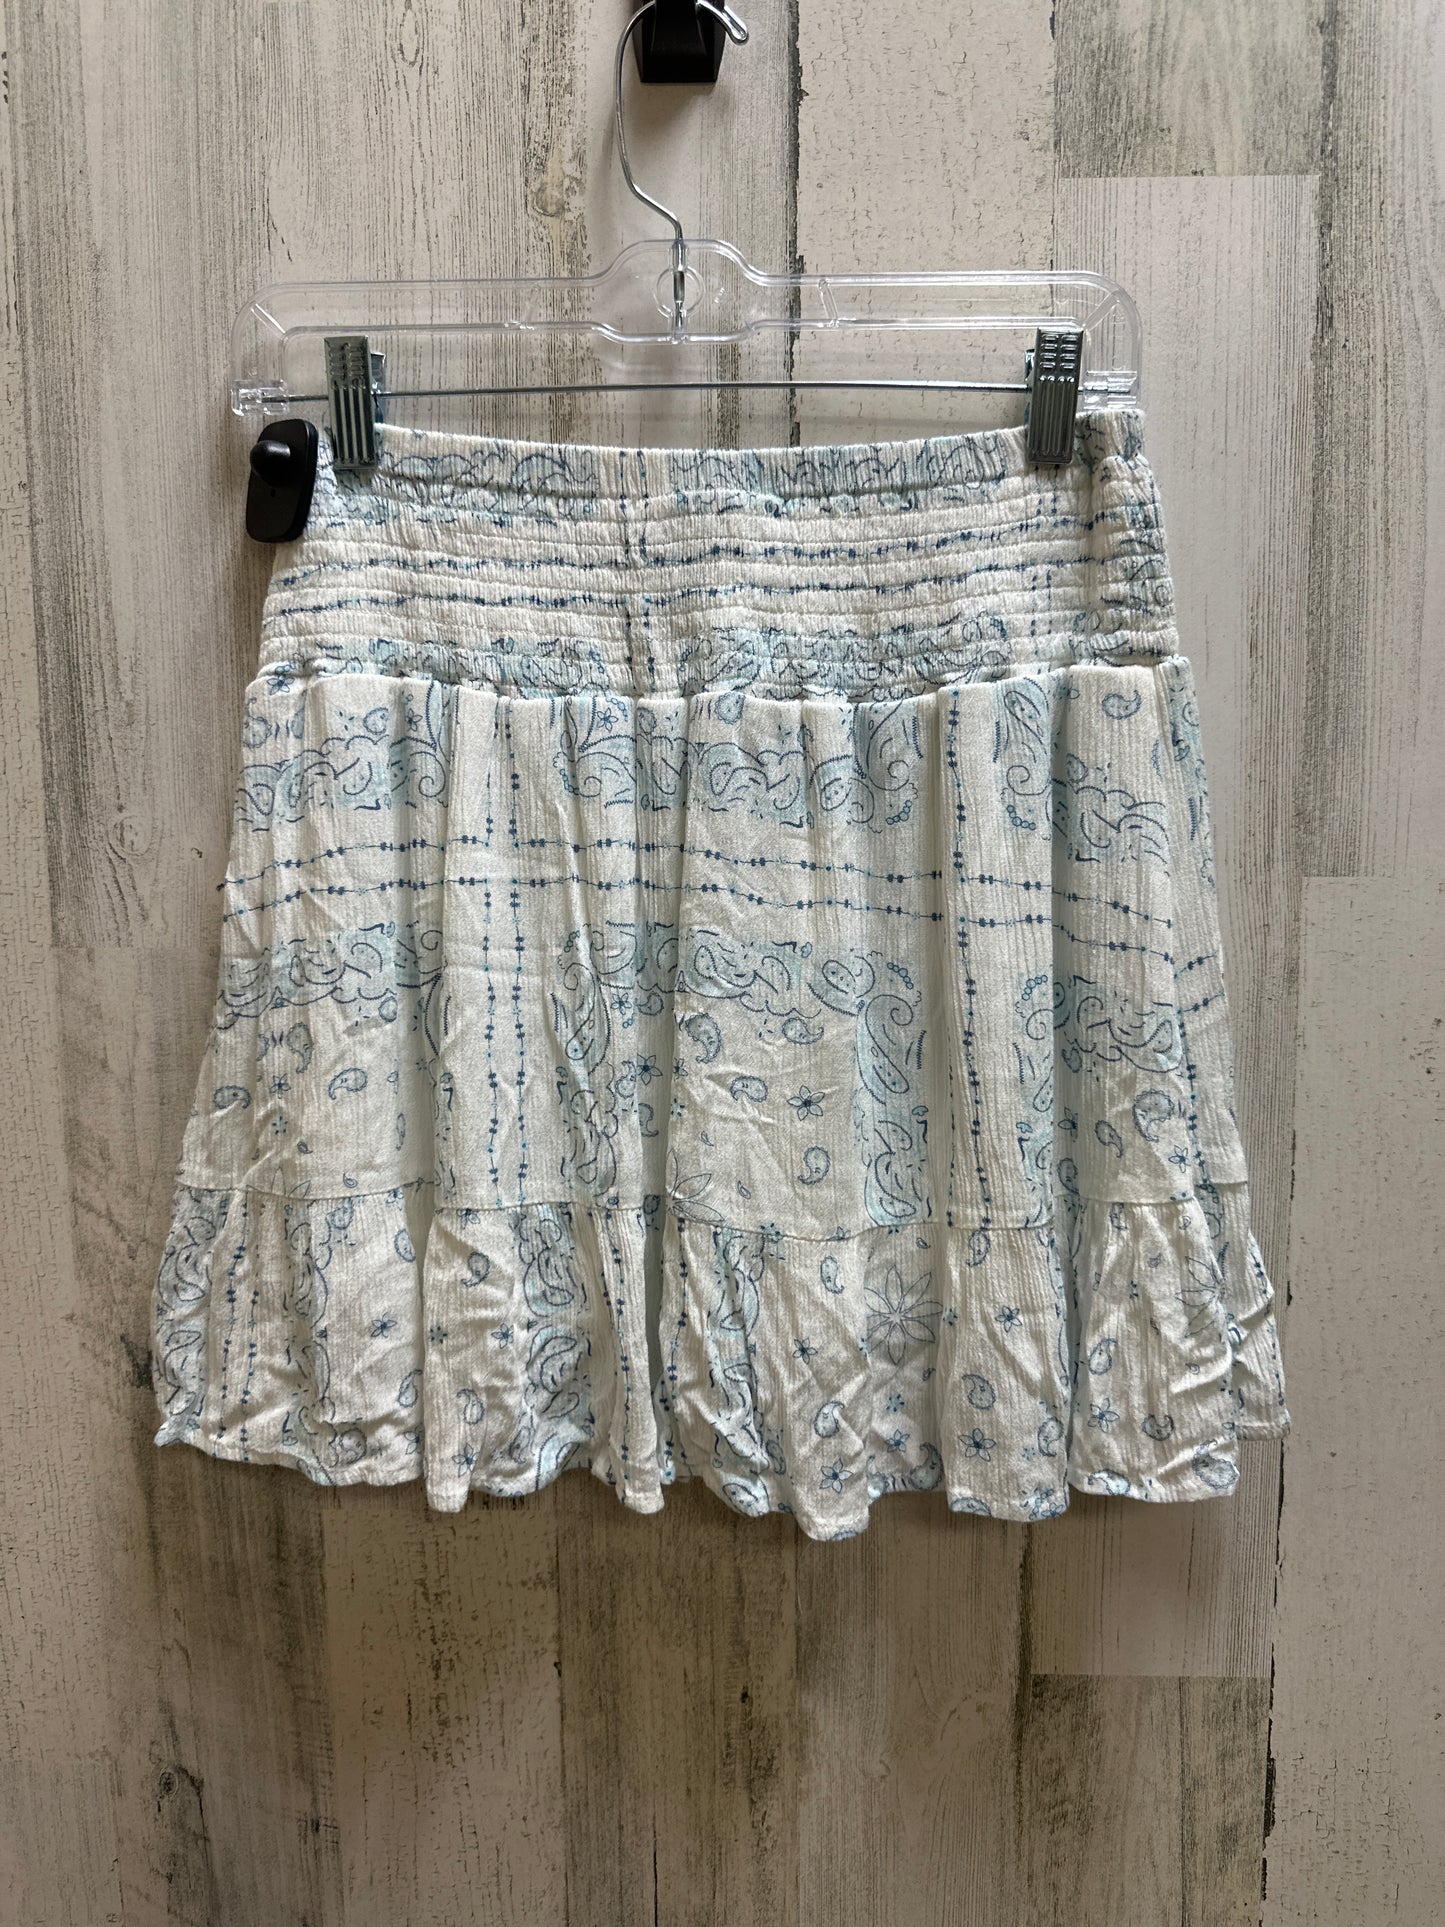 White Skirt Mini & Short Ocean Drive , Size 12